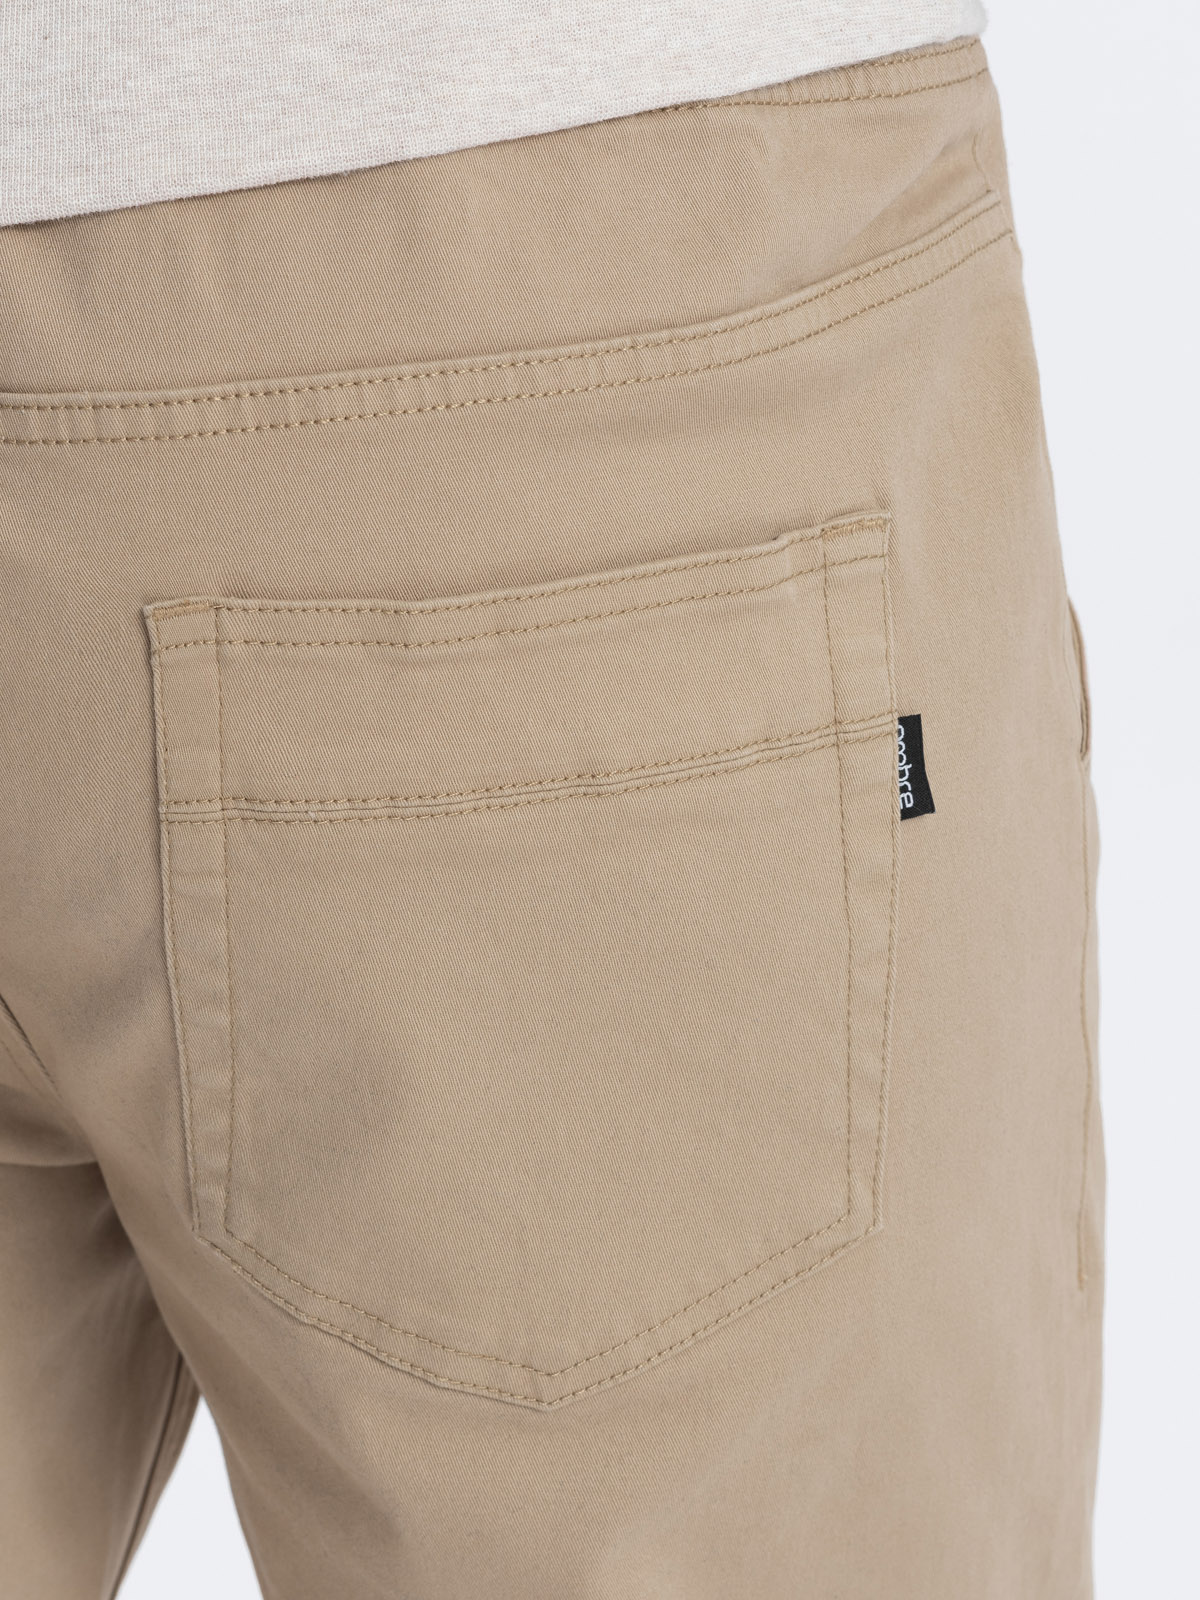 Men's pants joggers P908 - beige | MODONE wholesale - Clothing For Men